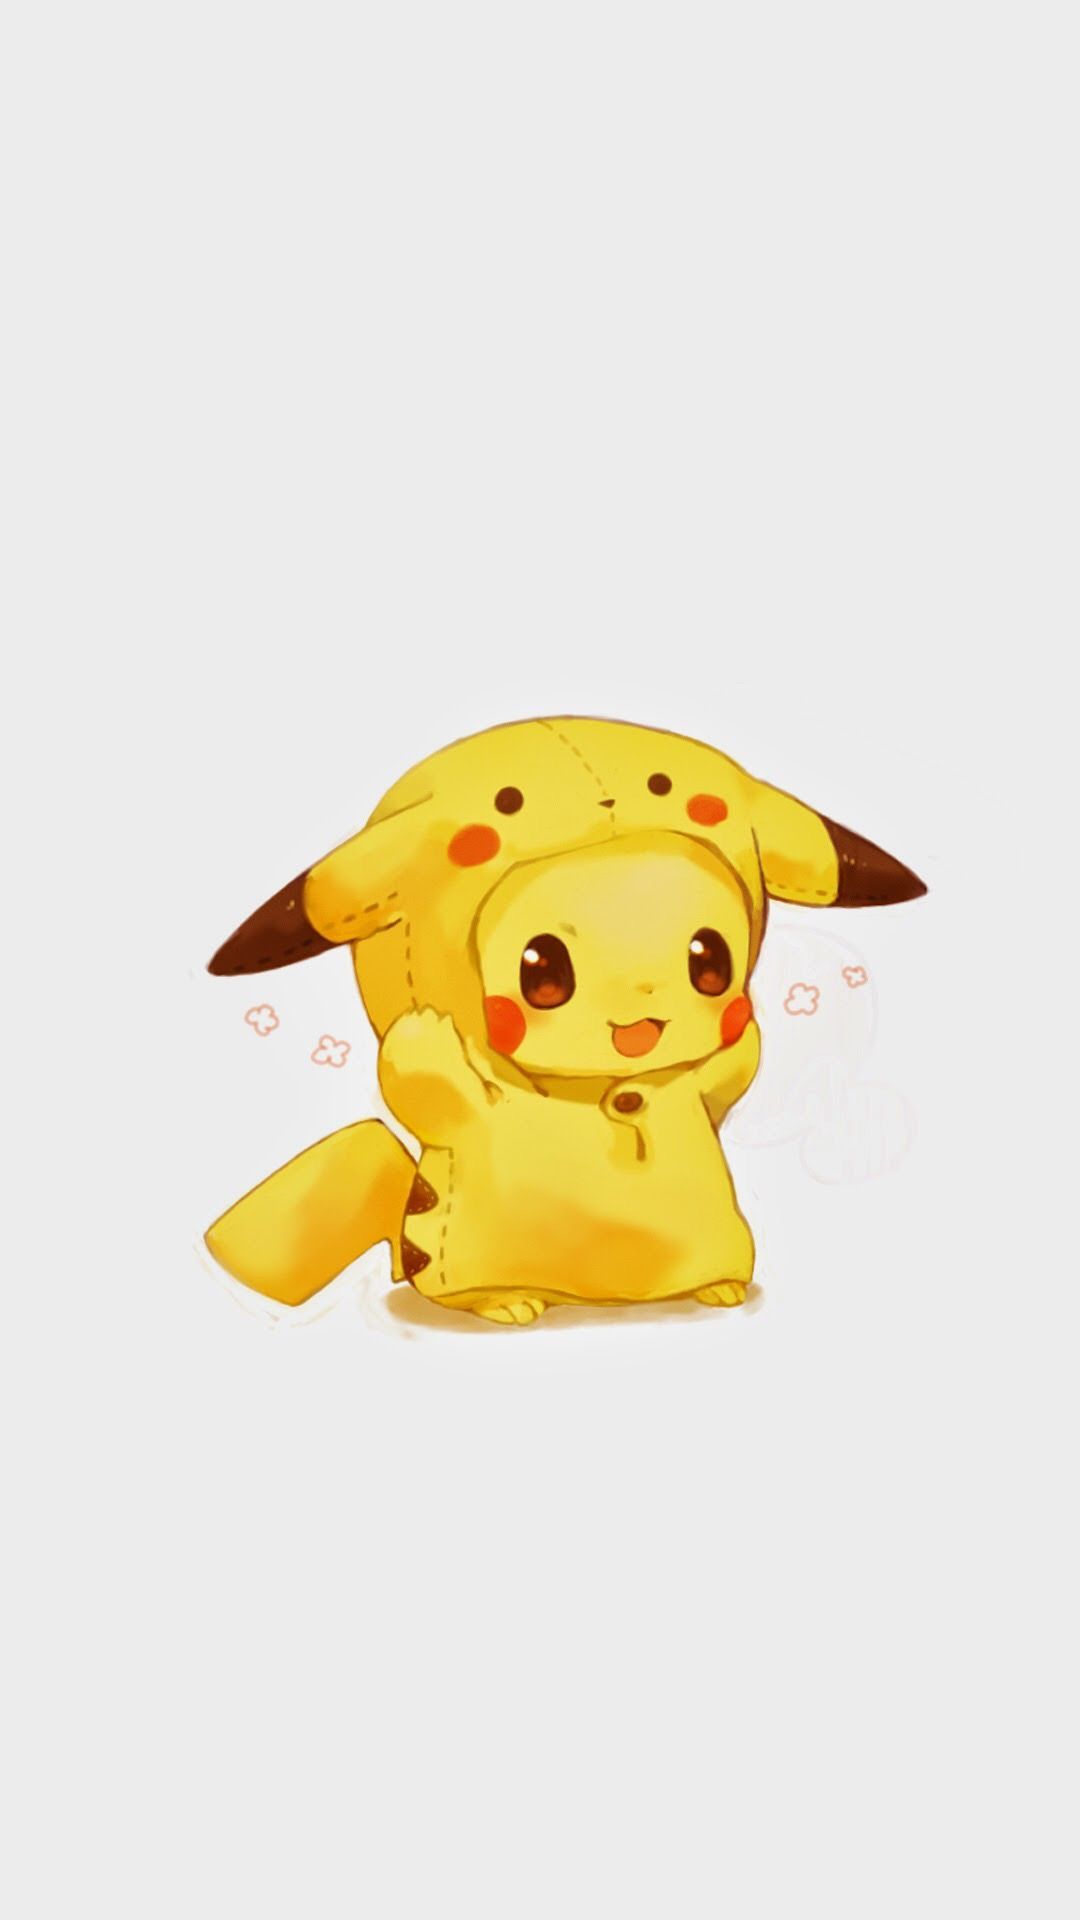 Fondos de pantalla de Cutest Pikachu - Los mejores fondos de pantalla de Cutest Pikachu